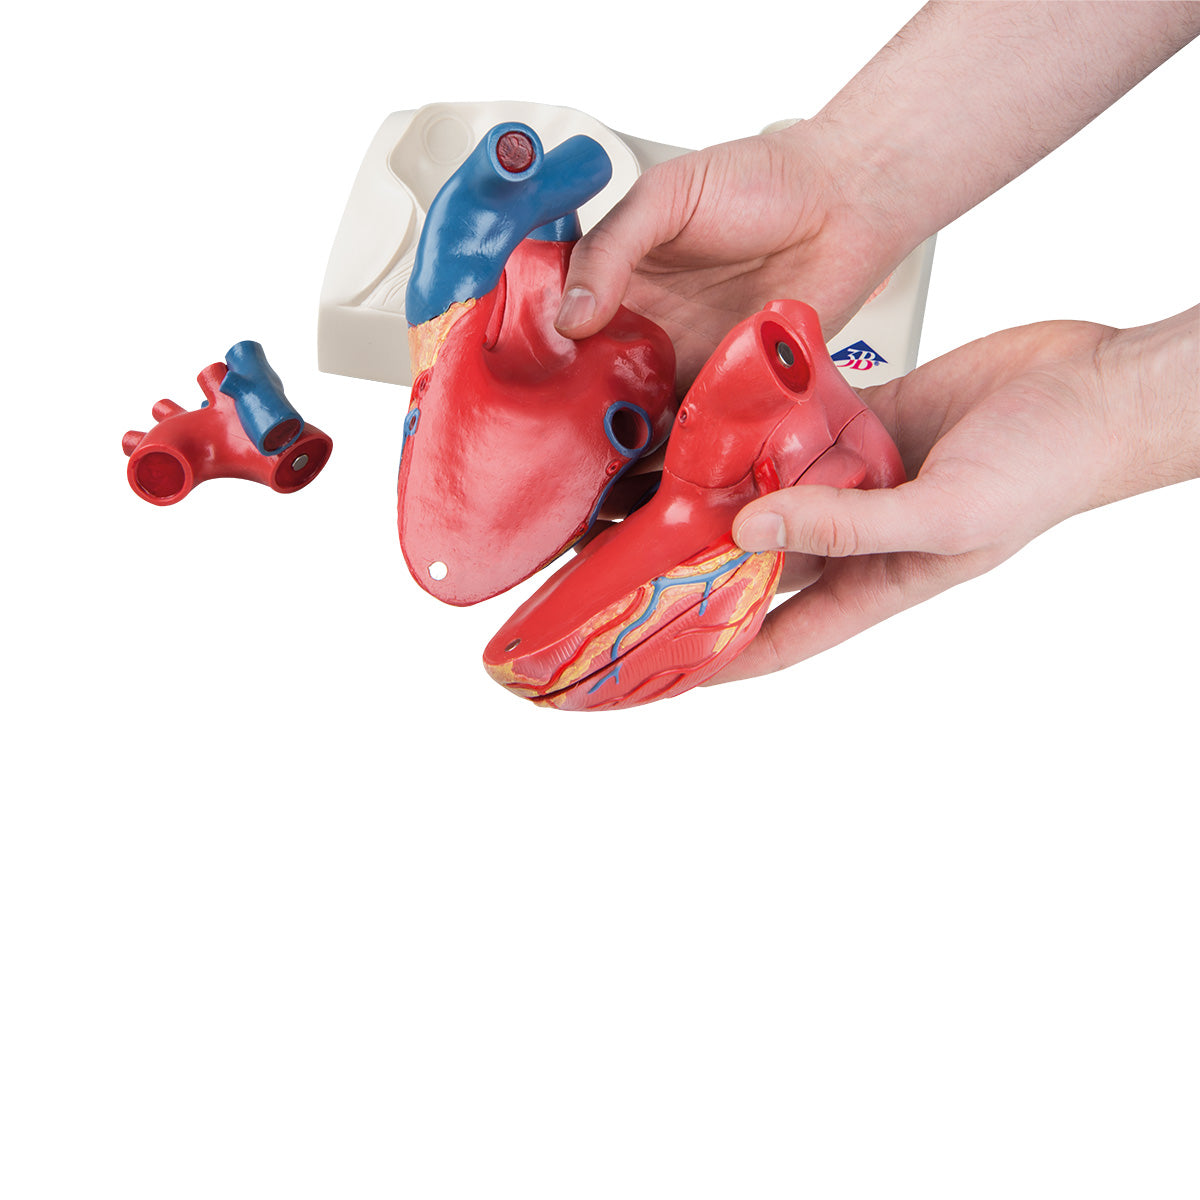 Hjertemodel med fokus på de 4 hjerteklapper og afstøbt efter et ægte hjerte